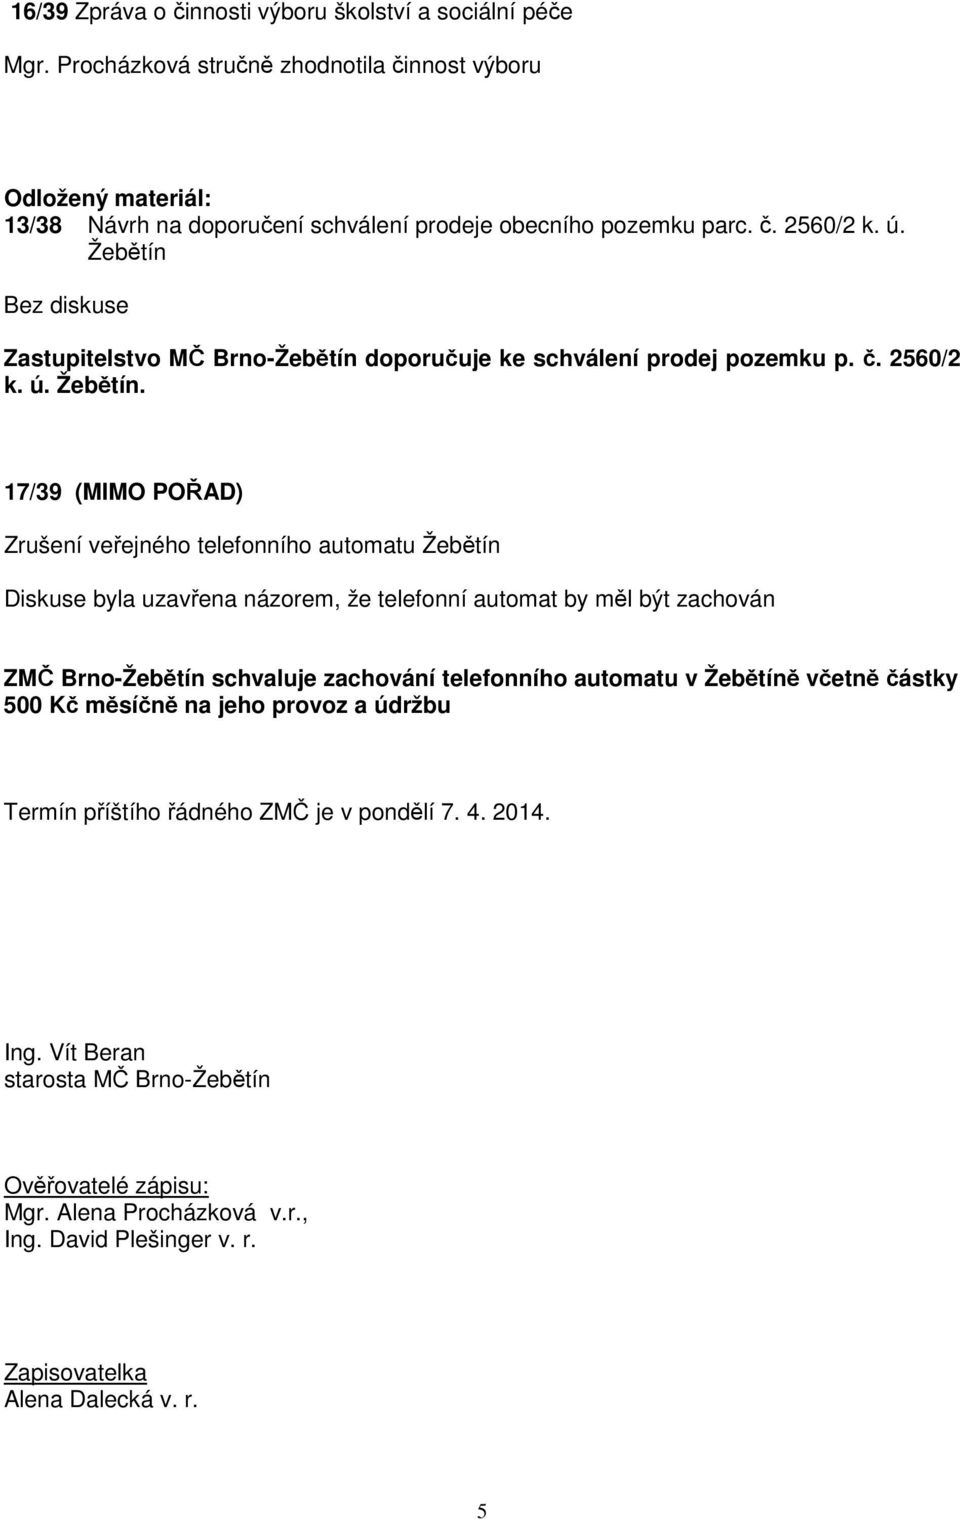 Zastupitelstvo MČ Brno-Žebětín doporučuje ke schválení prodej pozemku p. č. 2560/2 k. ú. Žebětín.